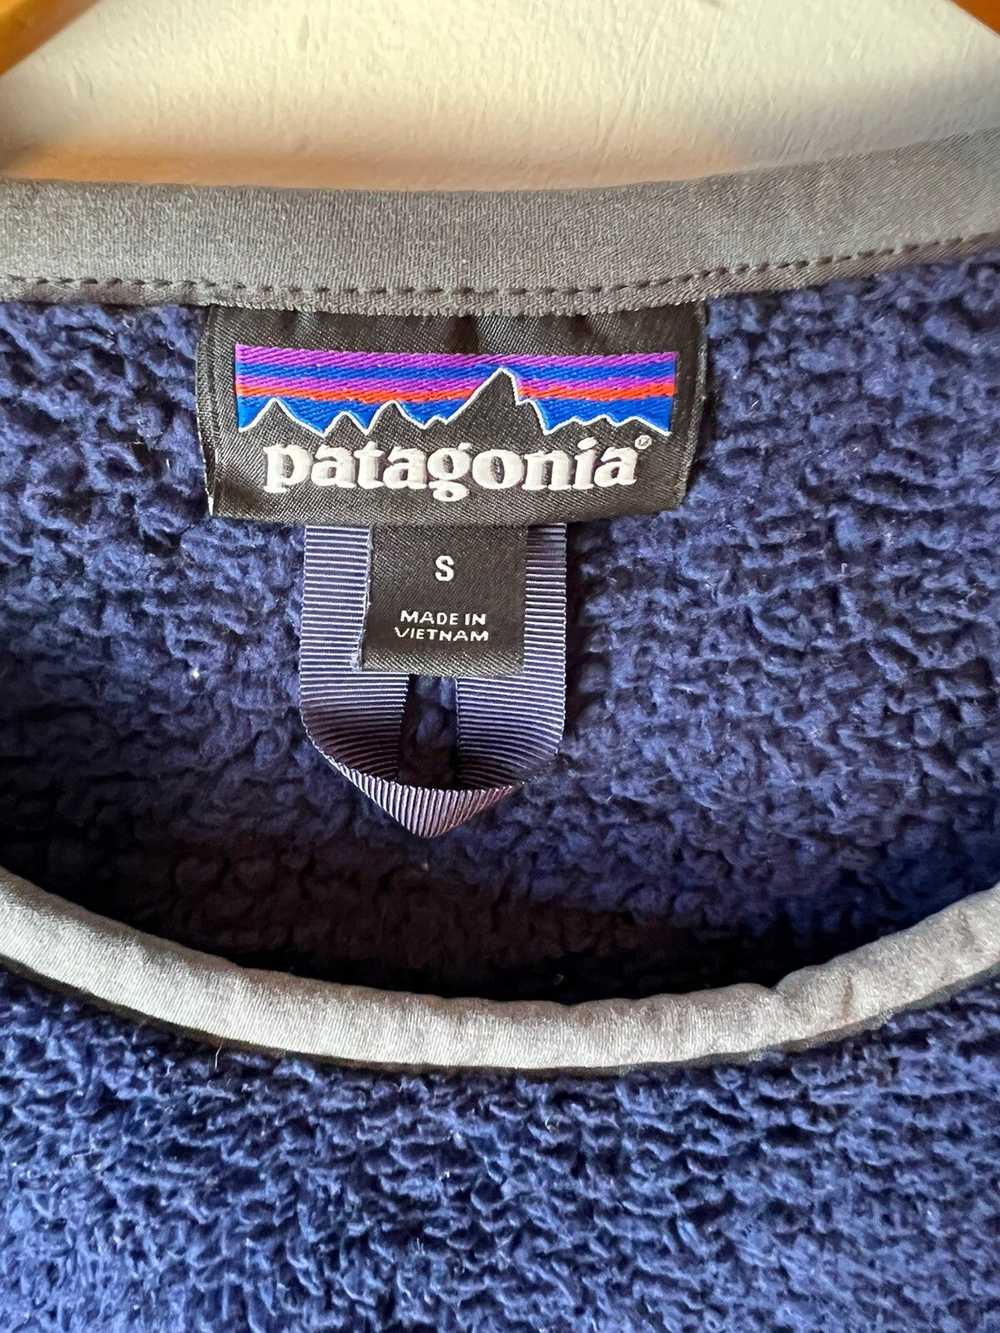 Patagonia Patagonia Fleece Jacket - image 3